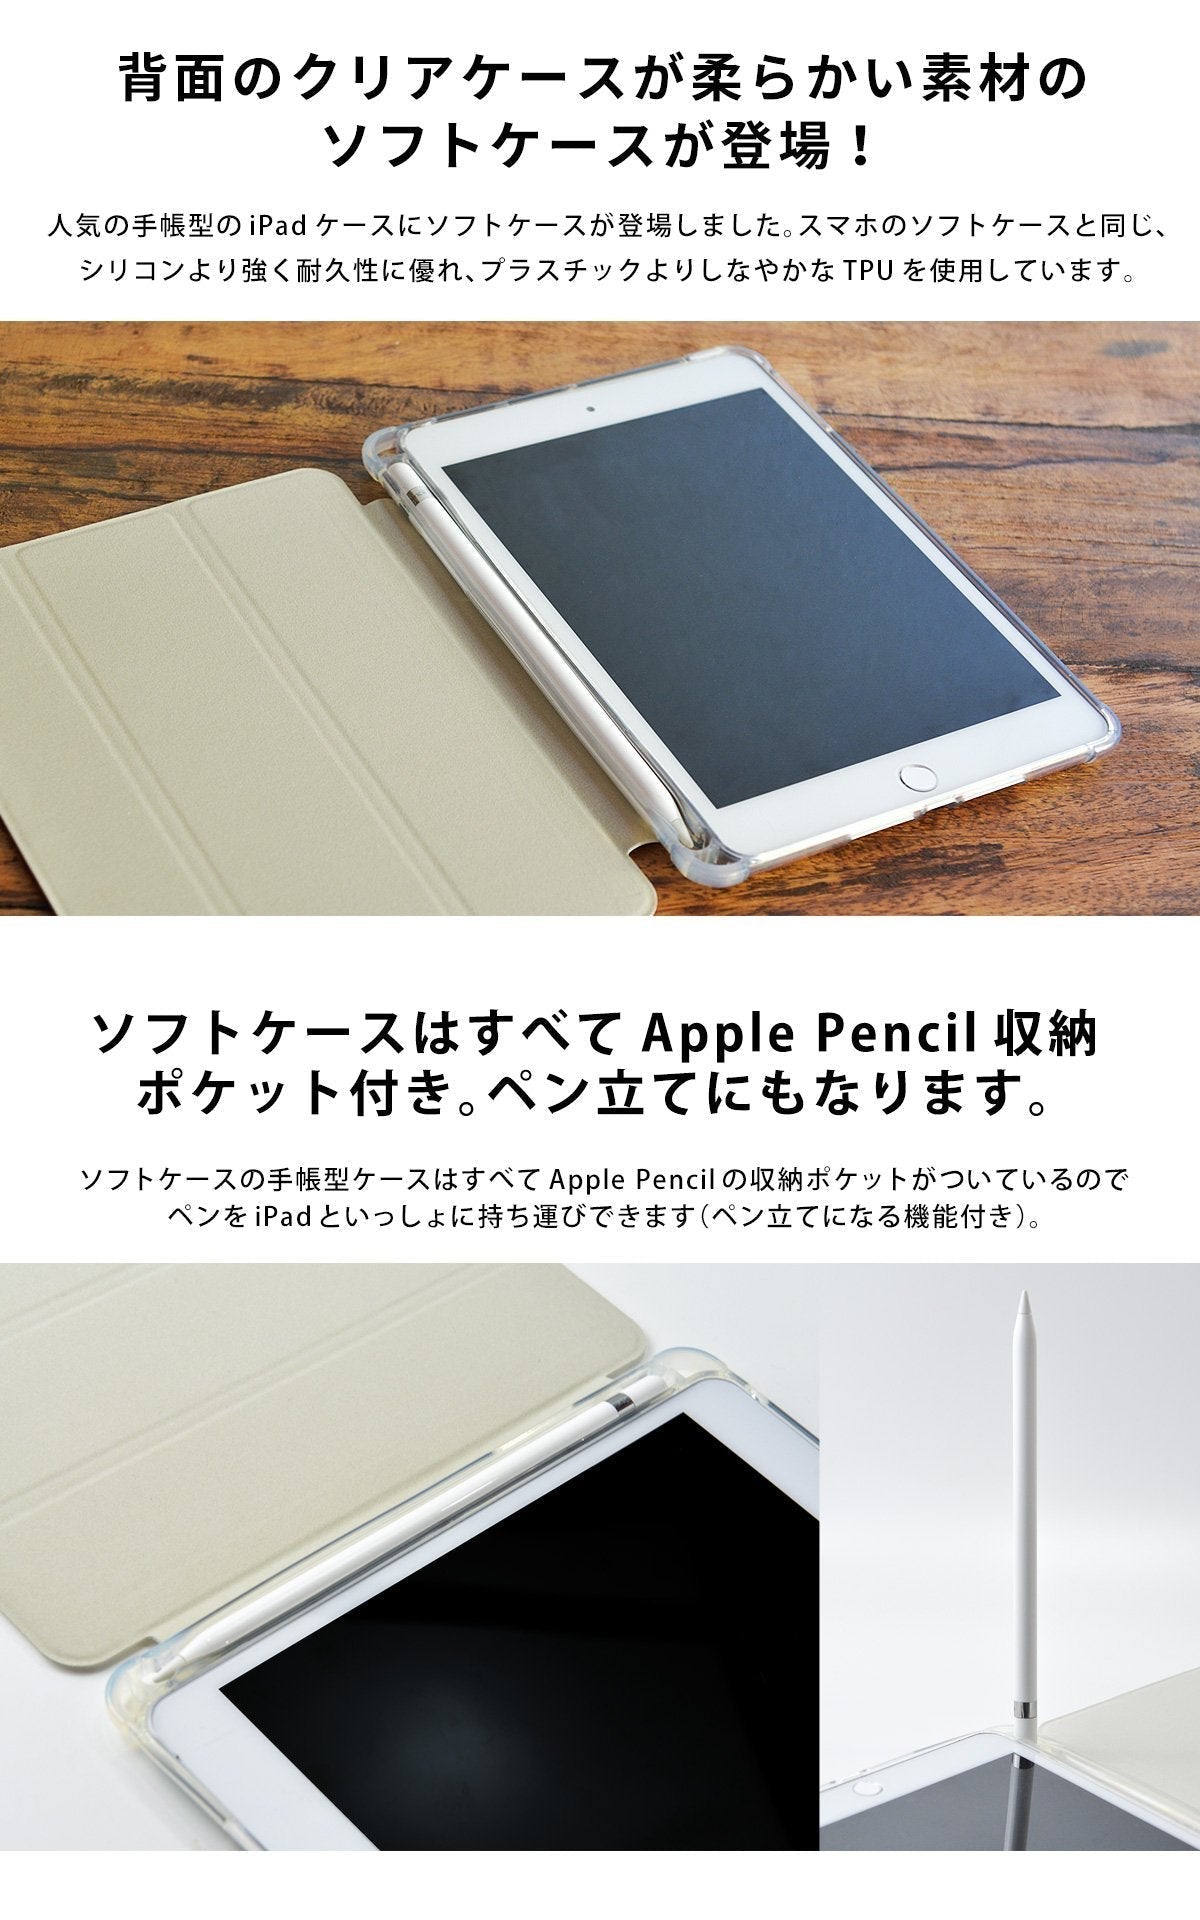 iPad mini5 mini4 ケース 透明 超薄型 超軽量ソフトカバー - iPad